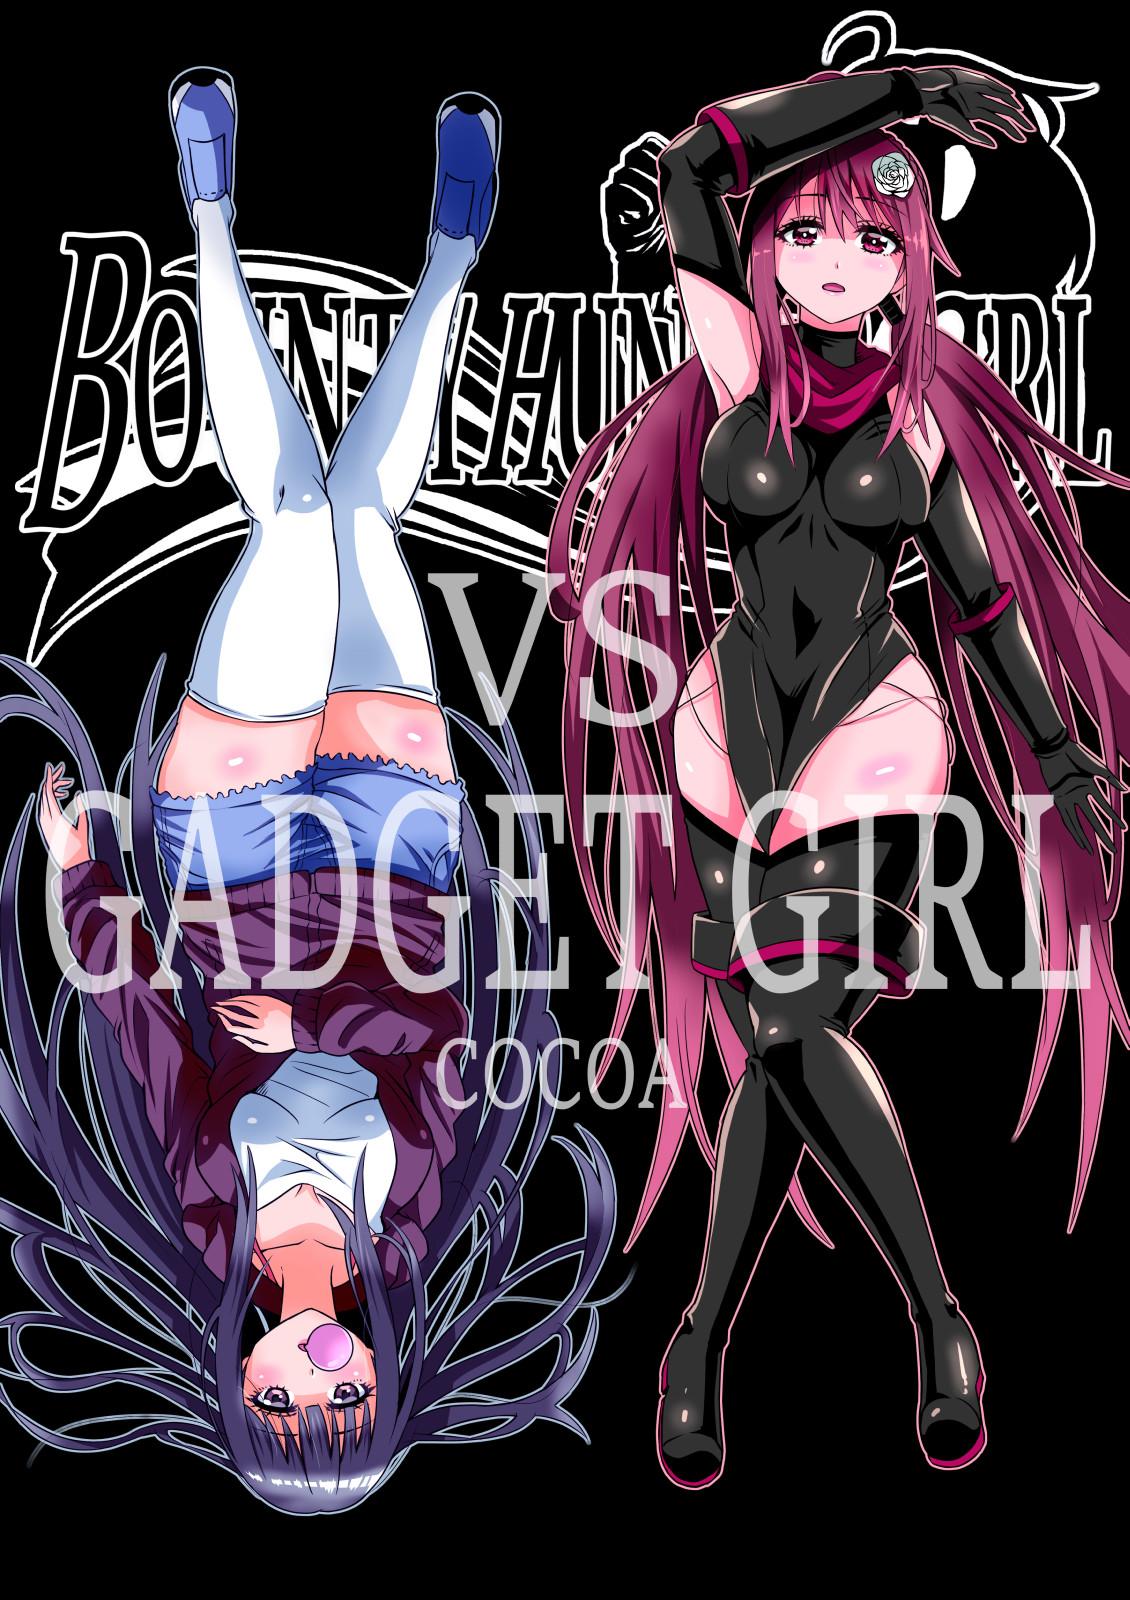 BOUNTY HUNTER GIRL vs GADGET GIRL Ch. 22 0